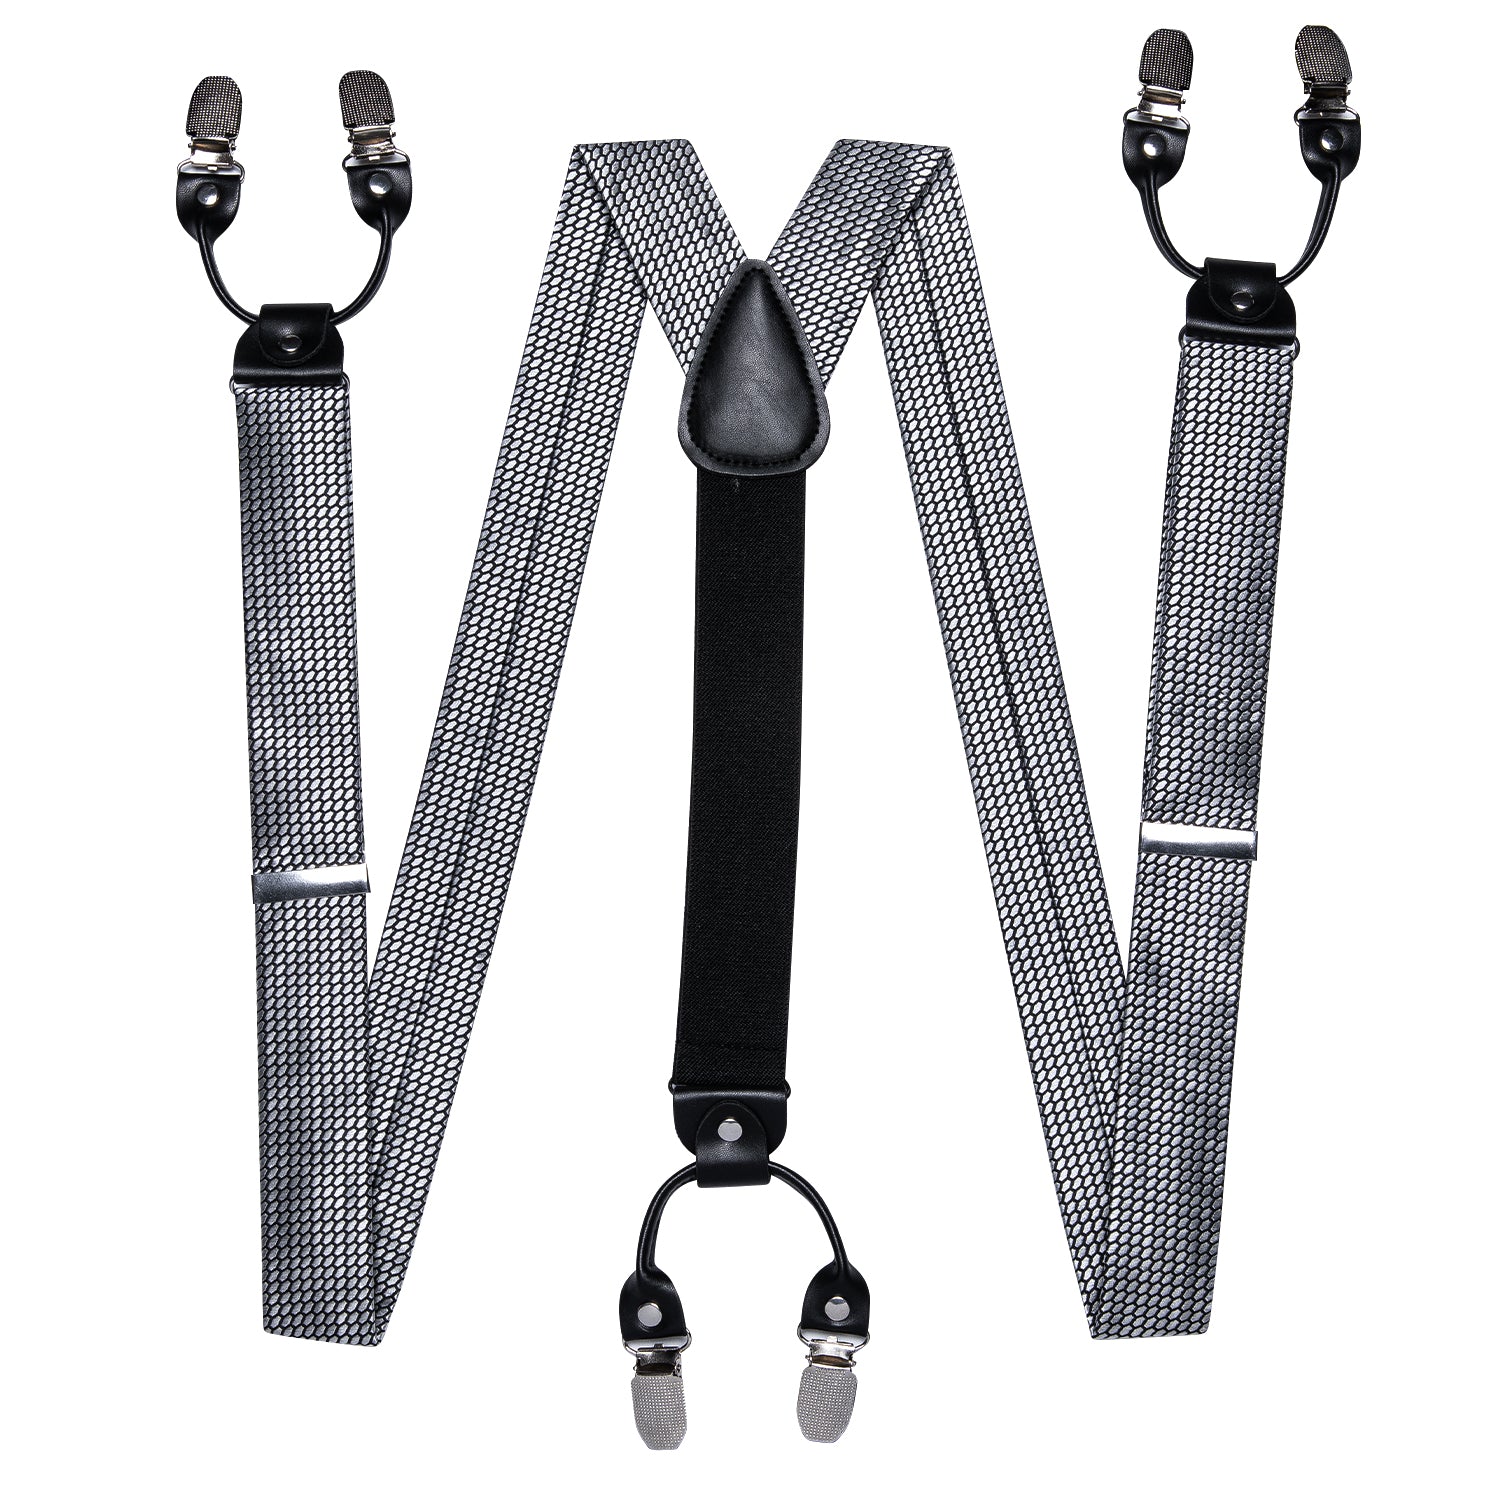 Grey Plaid Y Back Adjustable Suspender Bow Tie Hanky Cufflinks Set